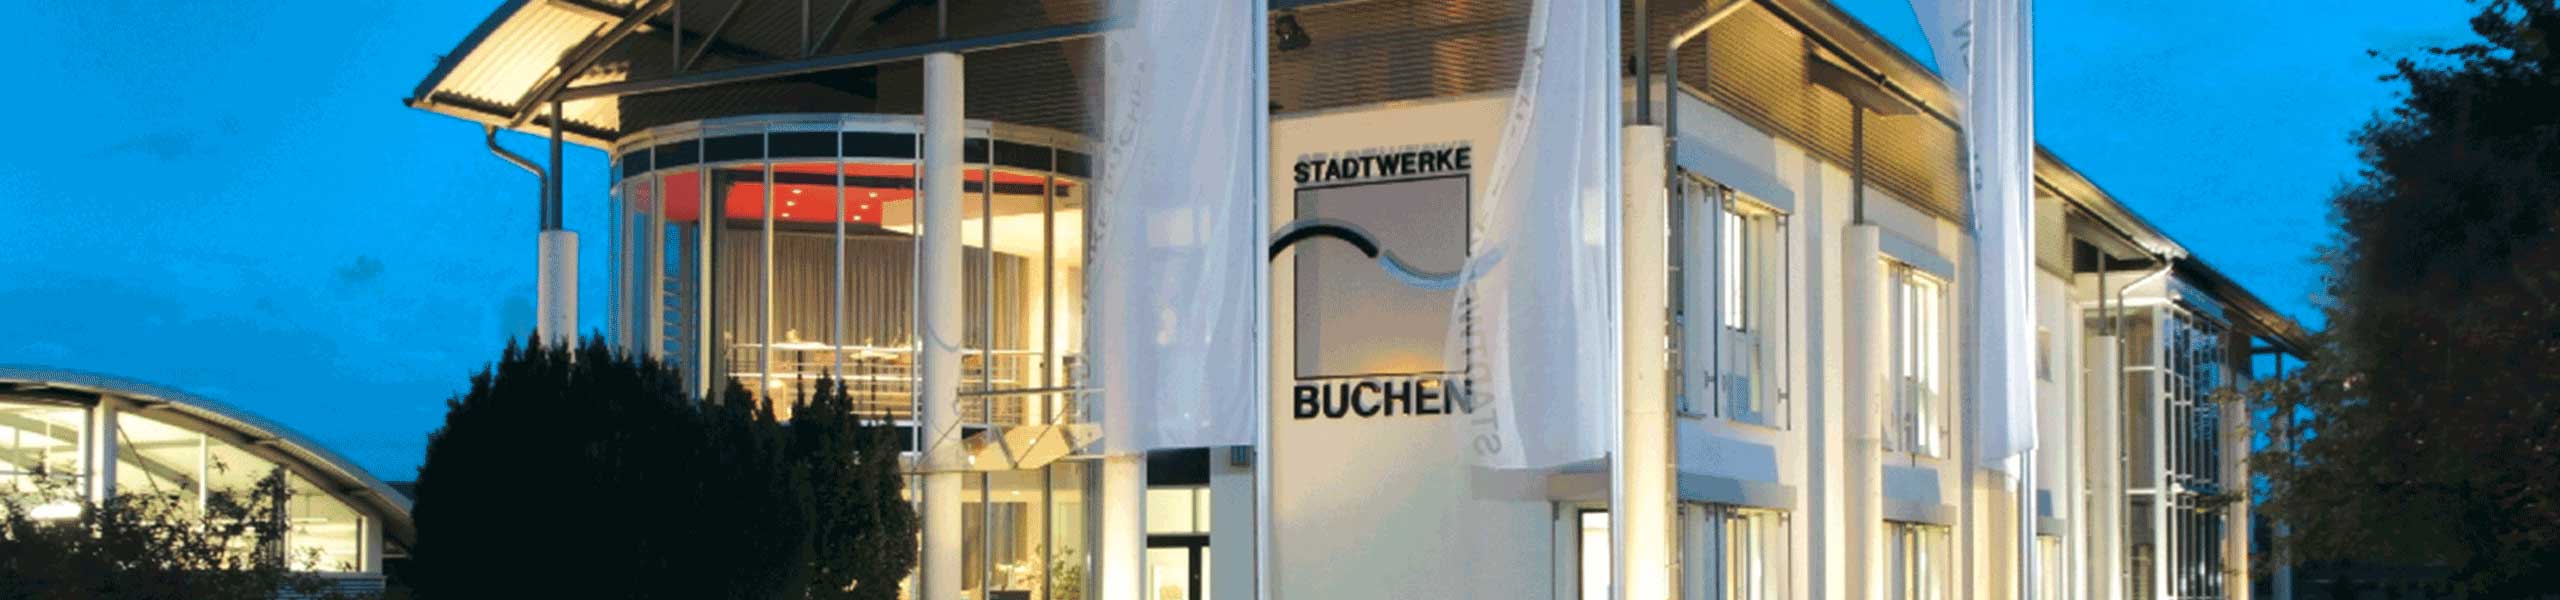 Stadtwerke Buchen GmbH & Co KG - Ihr Versorger vor Ort - Impressum